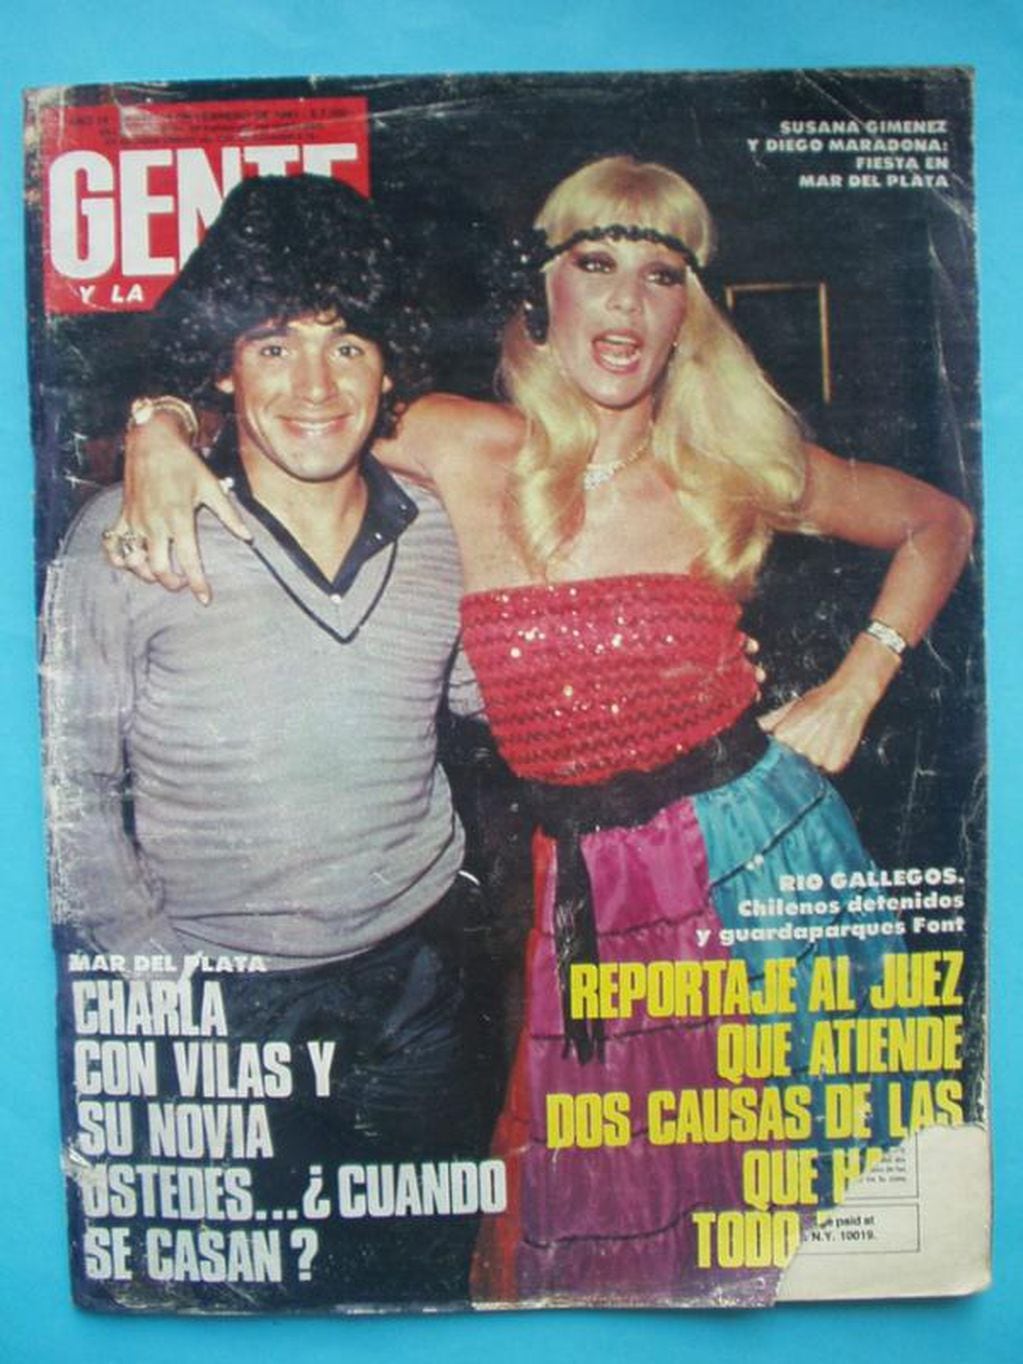 Susana Giménez y Maradona tapa por una fiesta en la que estuvieron juntos. 